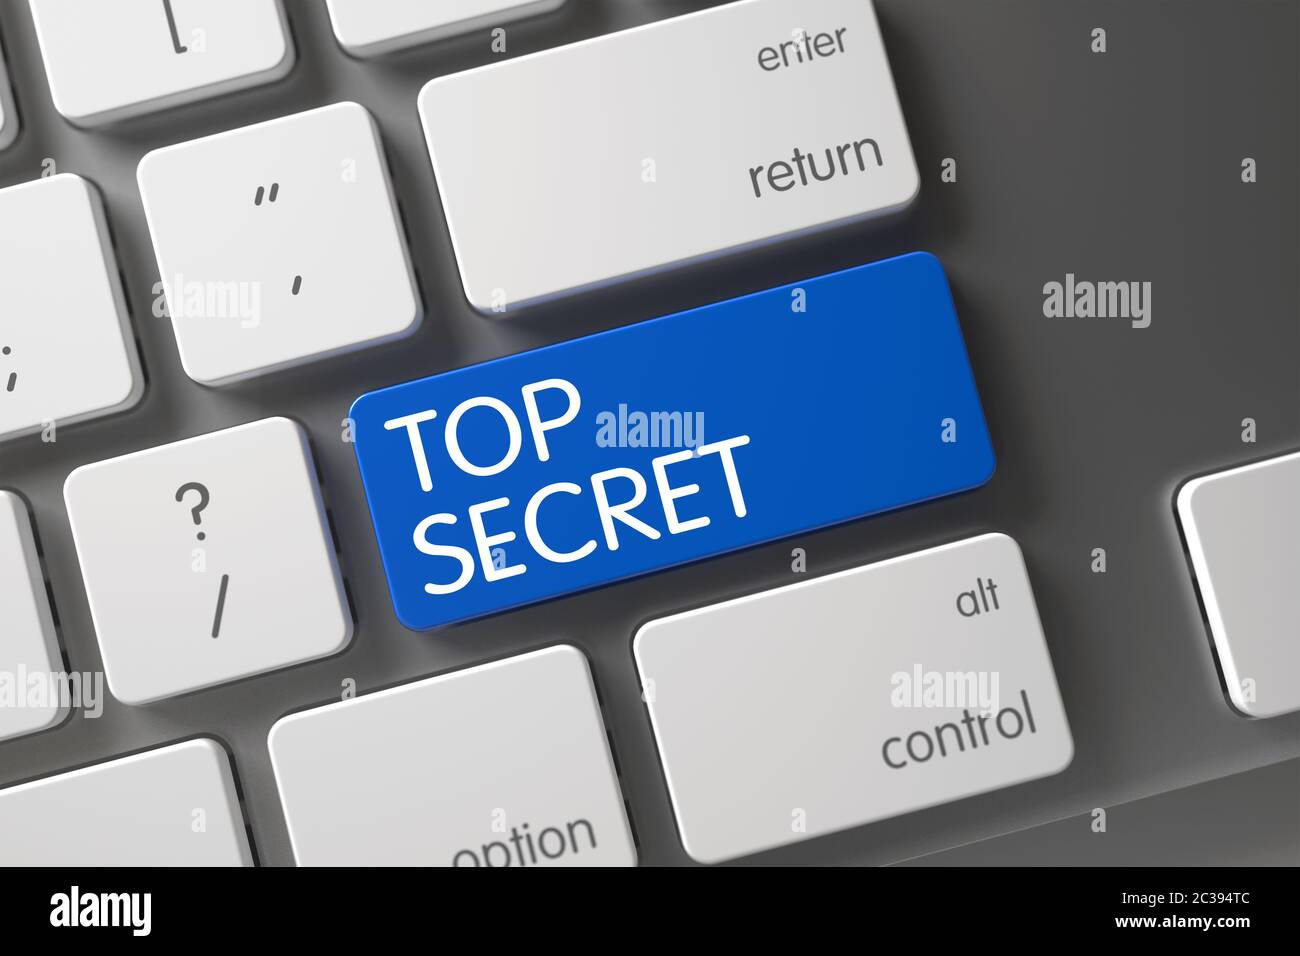 Concept de Top Secret, avec Top Secret sur le bouton bleu Enter sur le  clavier moderne. Touche secret supérieure sur clavier moderne. Clavier  modernisé avec touche de raccourci pour Photo Stock -